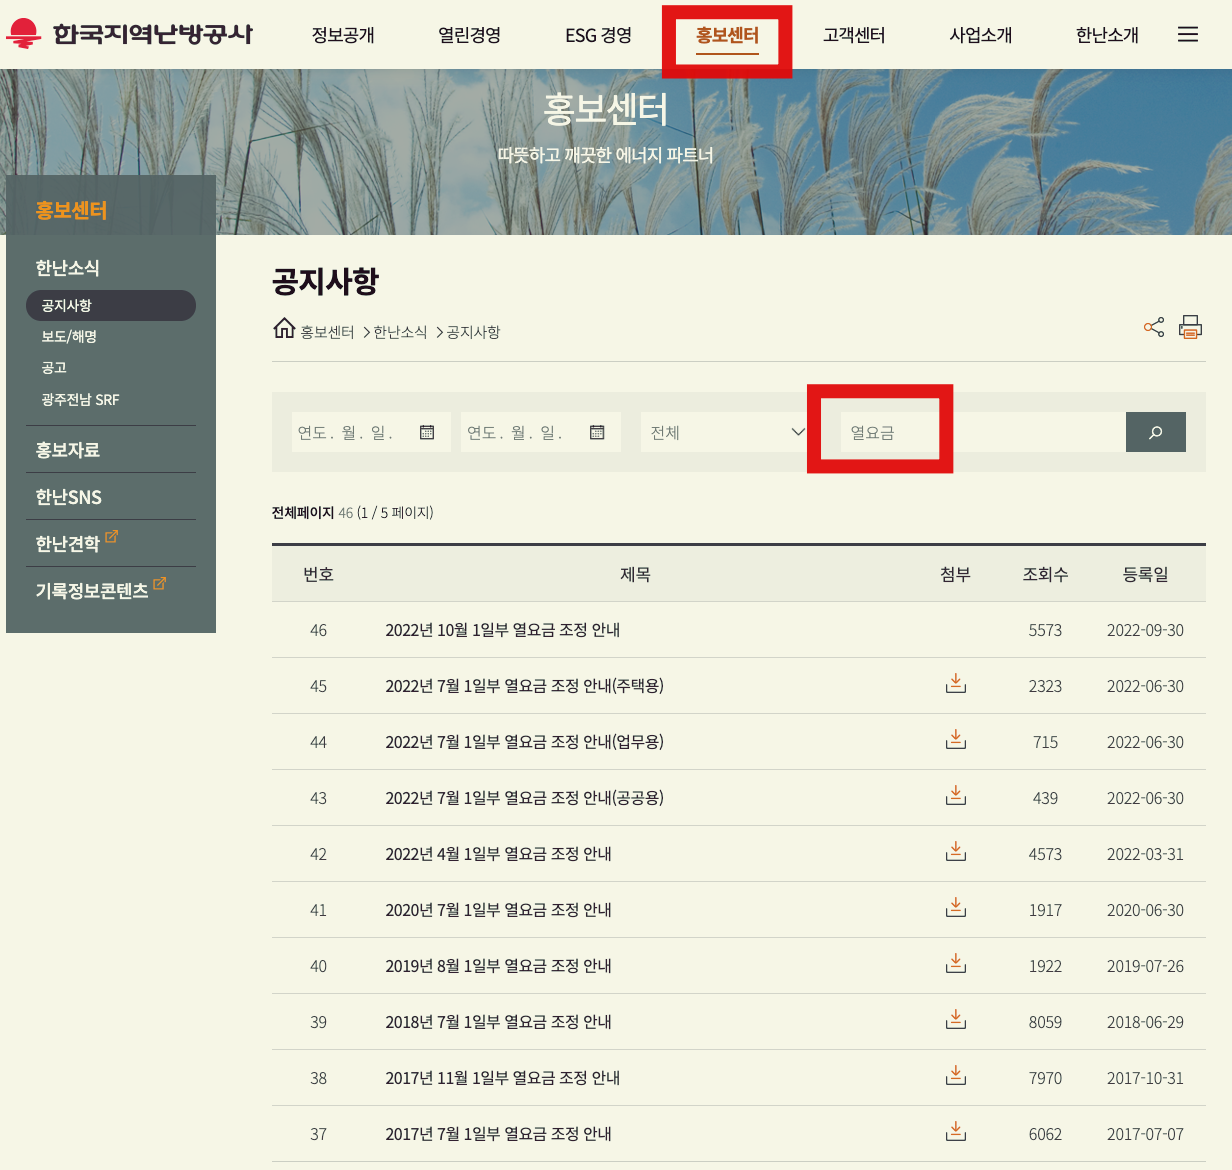 한국지역난방공사 홈페이지 난방비 상승분(열요금)조회